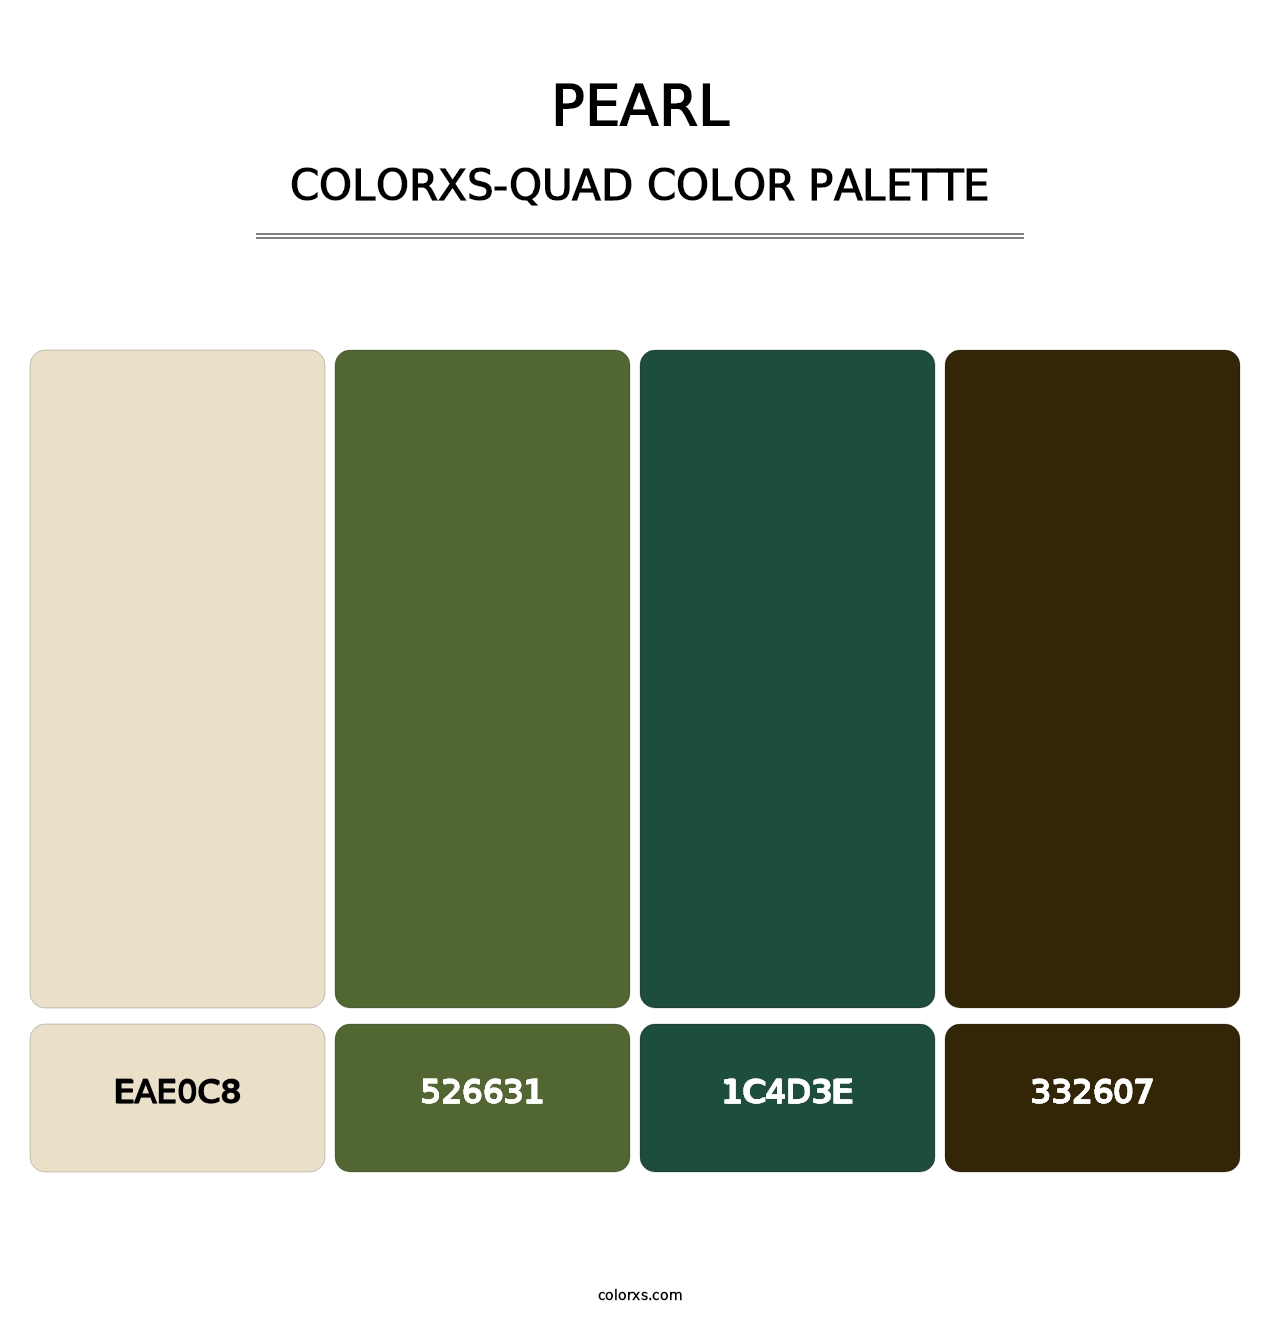 Pearl - Colorxs Quad Palette